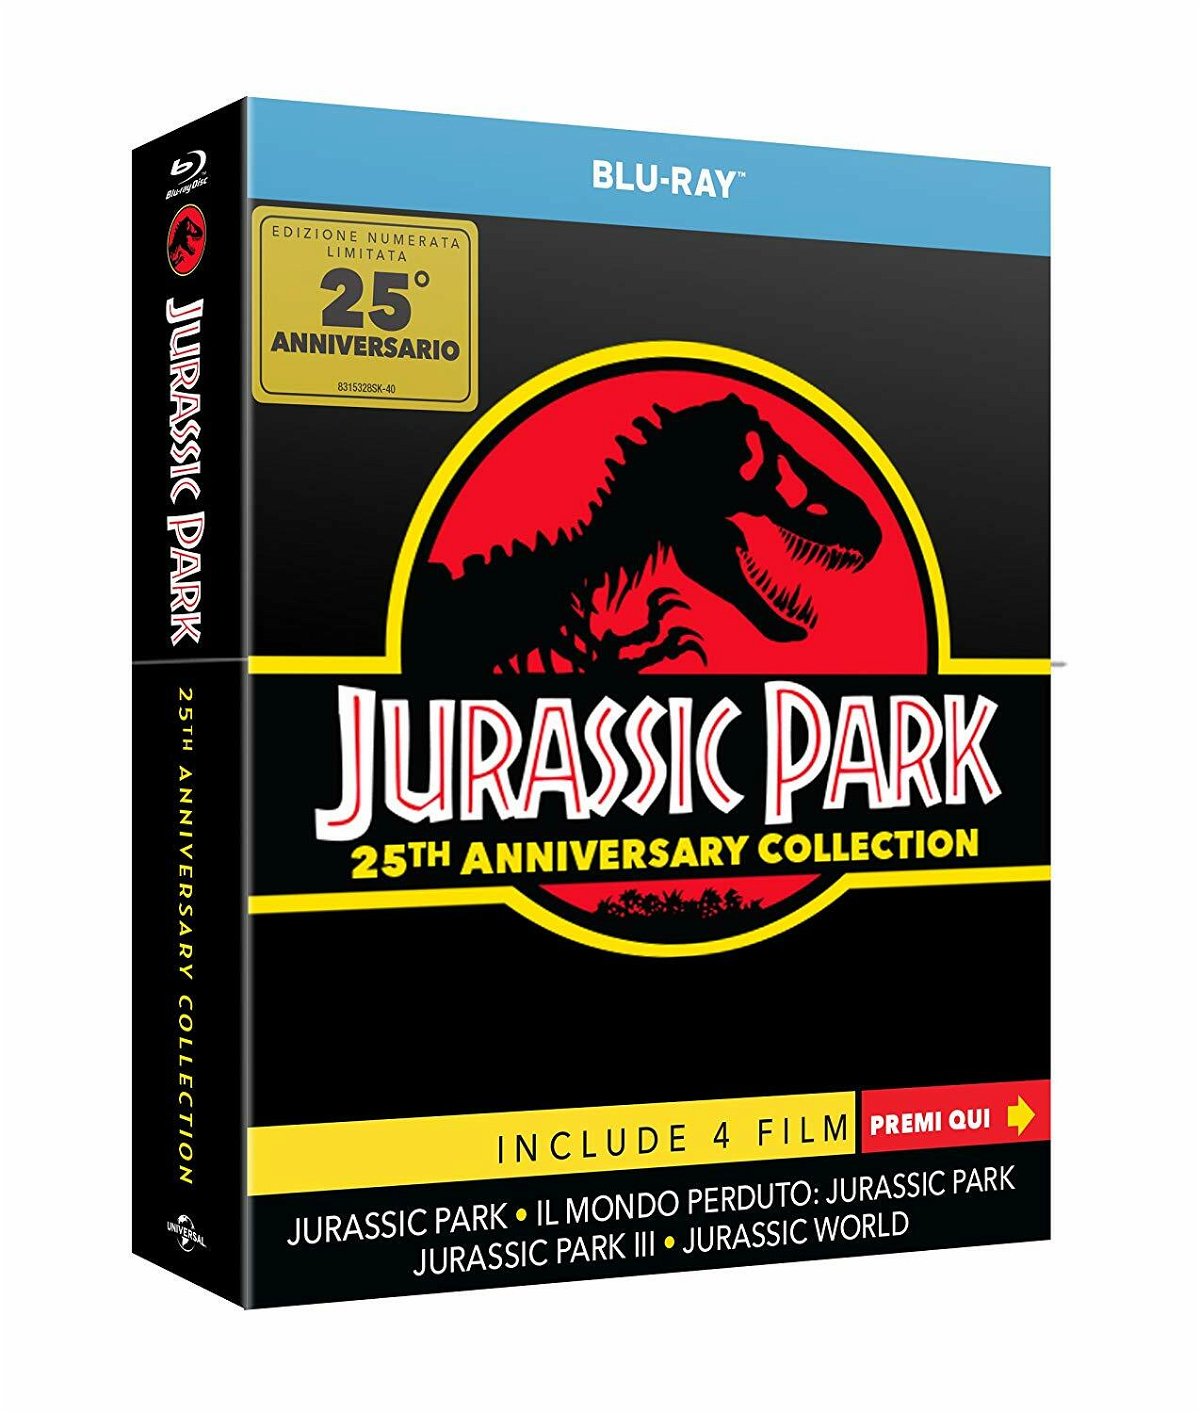 L'edizione limitata che celebra i 25 anni di Jurassic Park